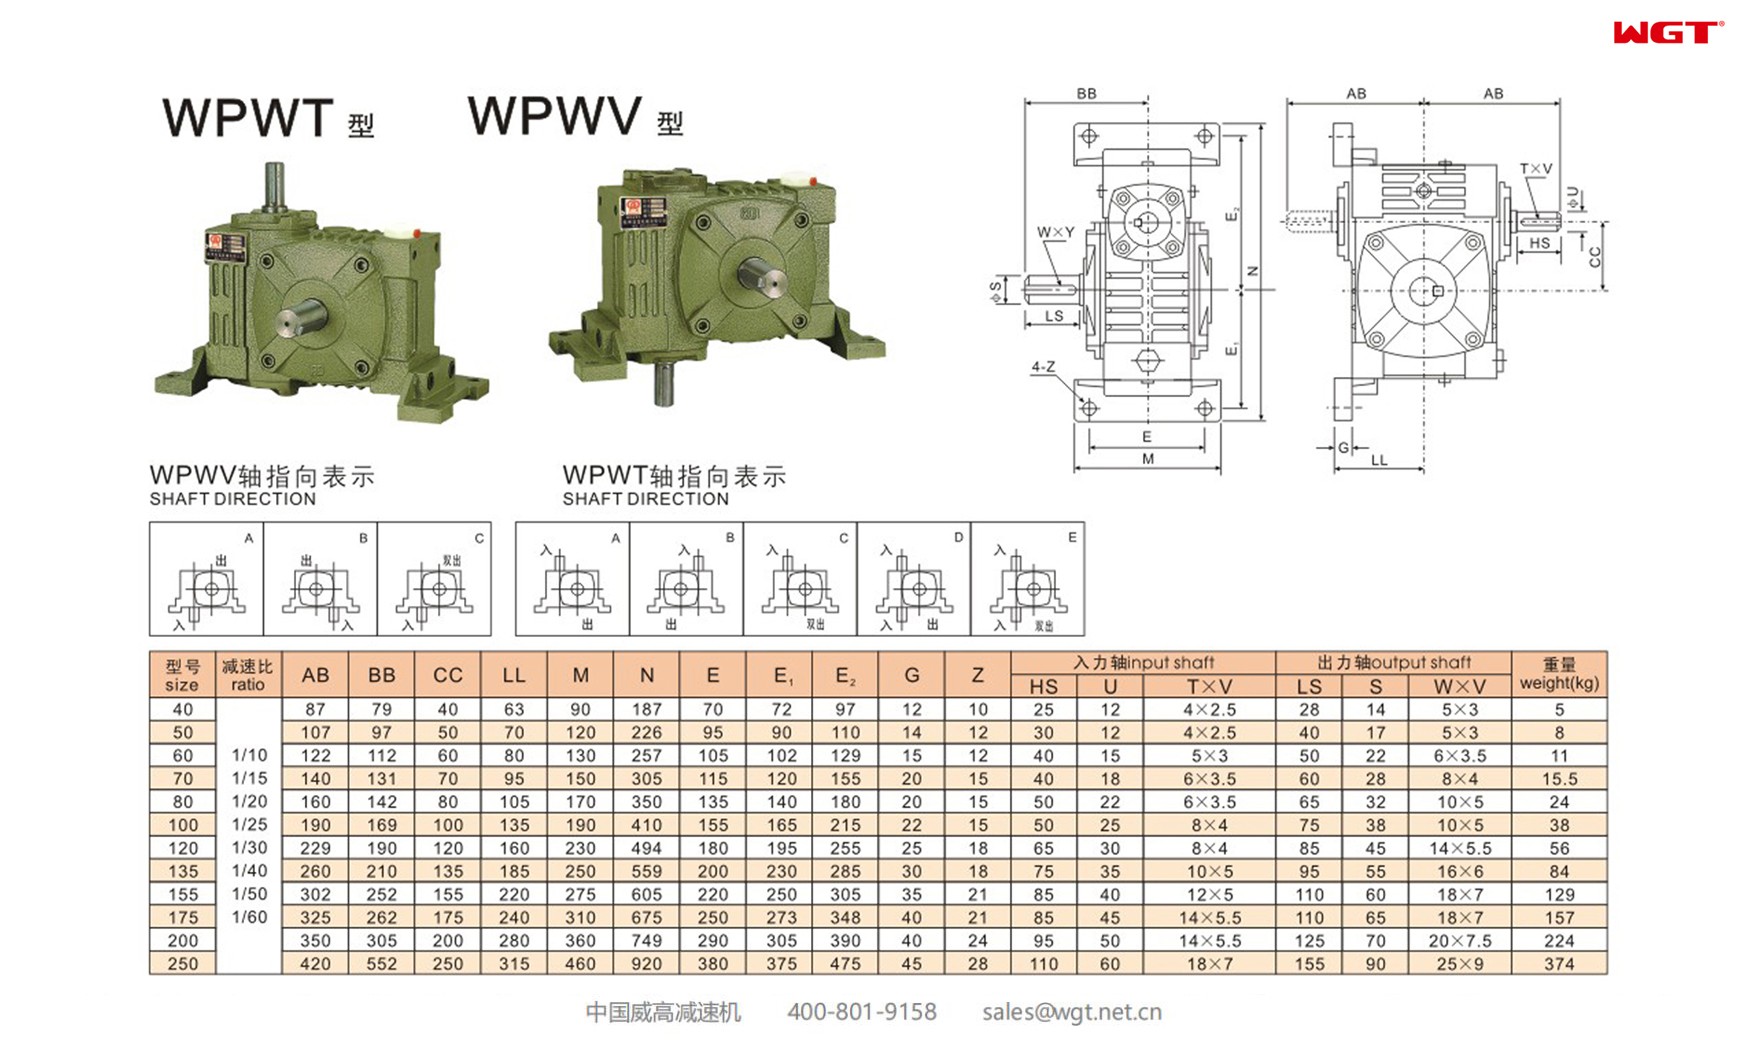 WPWV155 worm gear reducer universal speed reducer